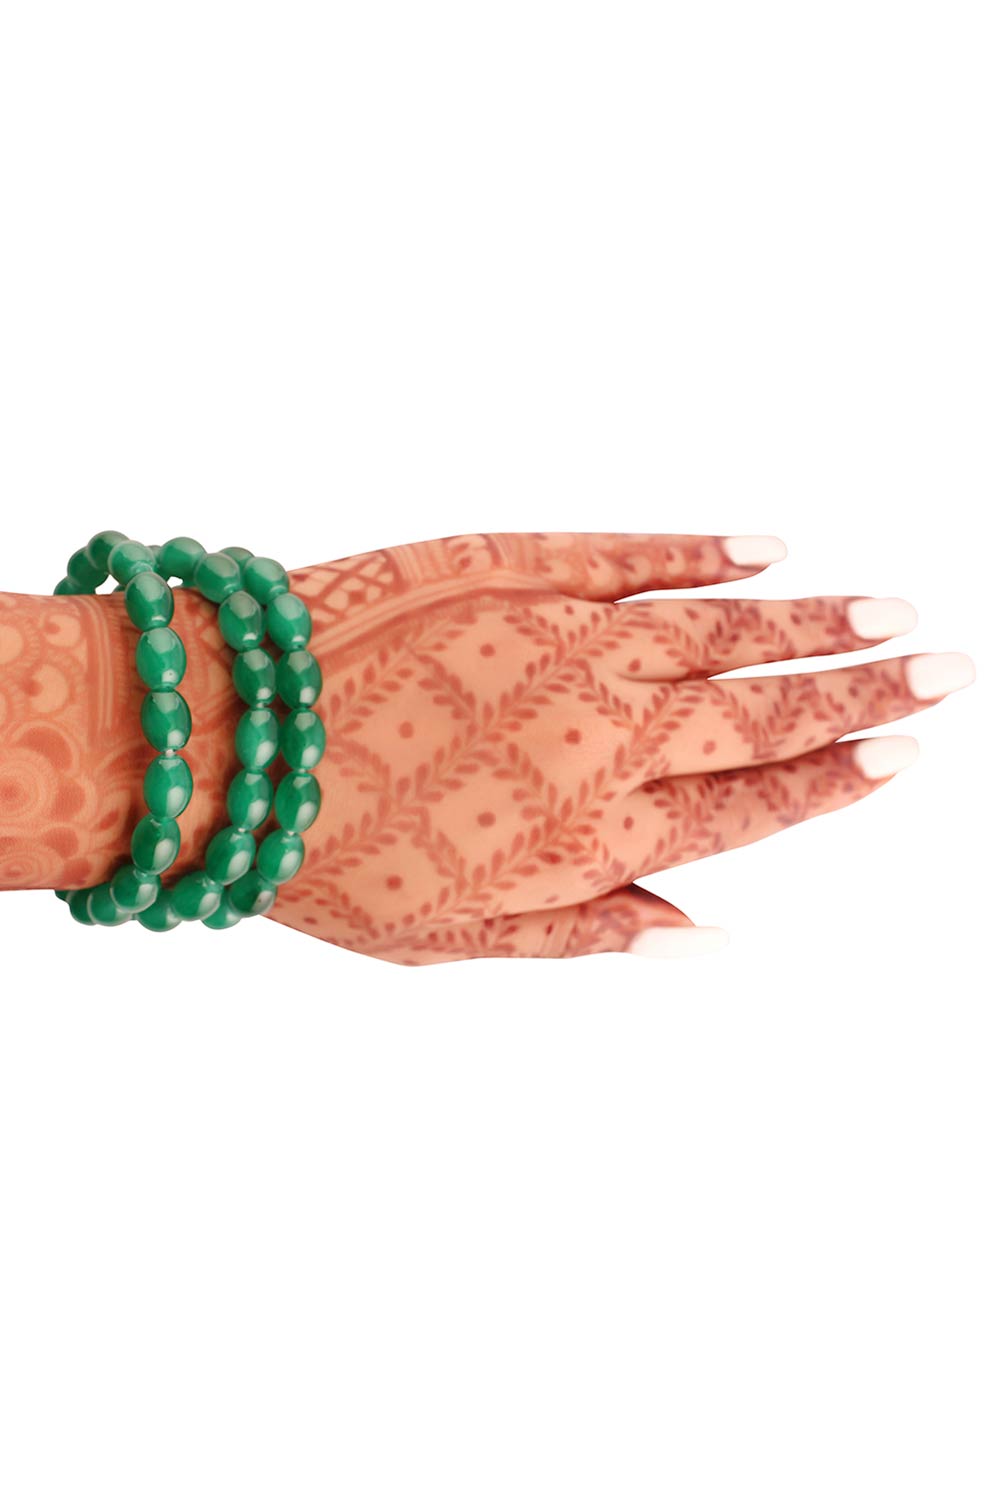 Buy Women's Alloy Bracelets in Green - Side